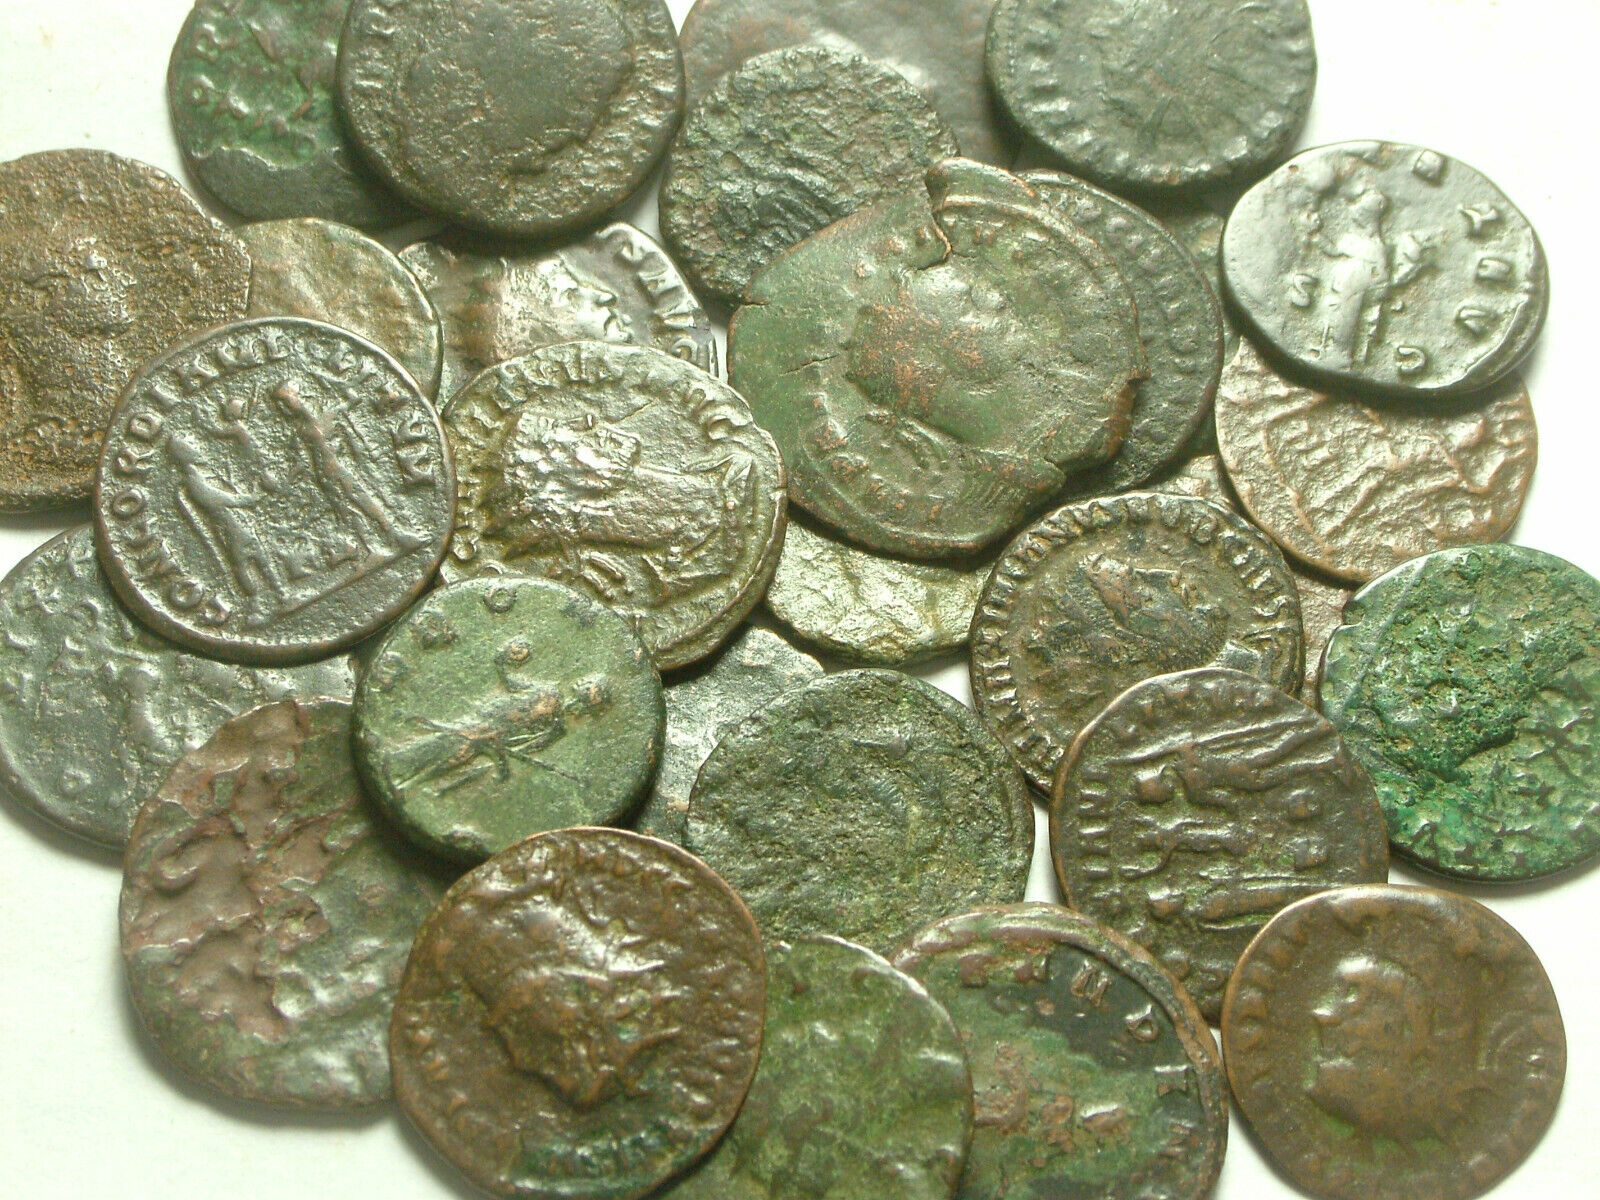 Lot of 3 Rare original Ancient Roman Antoninianus coins Probus Aurelian Claudius Без бренда - фотография #6